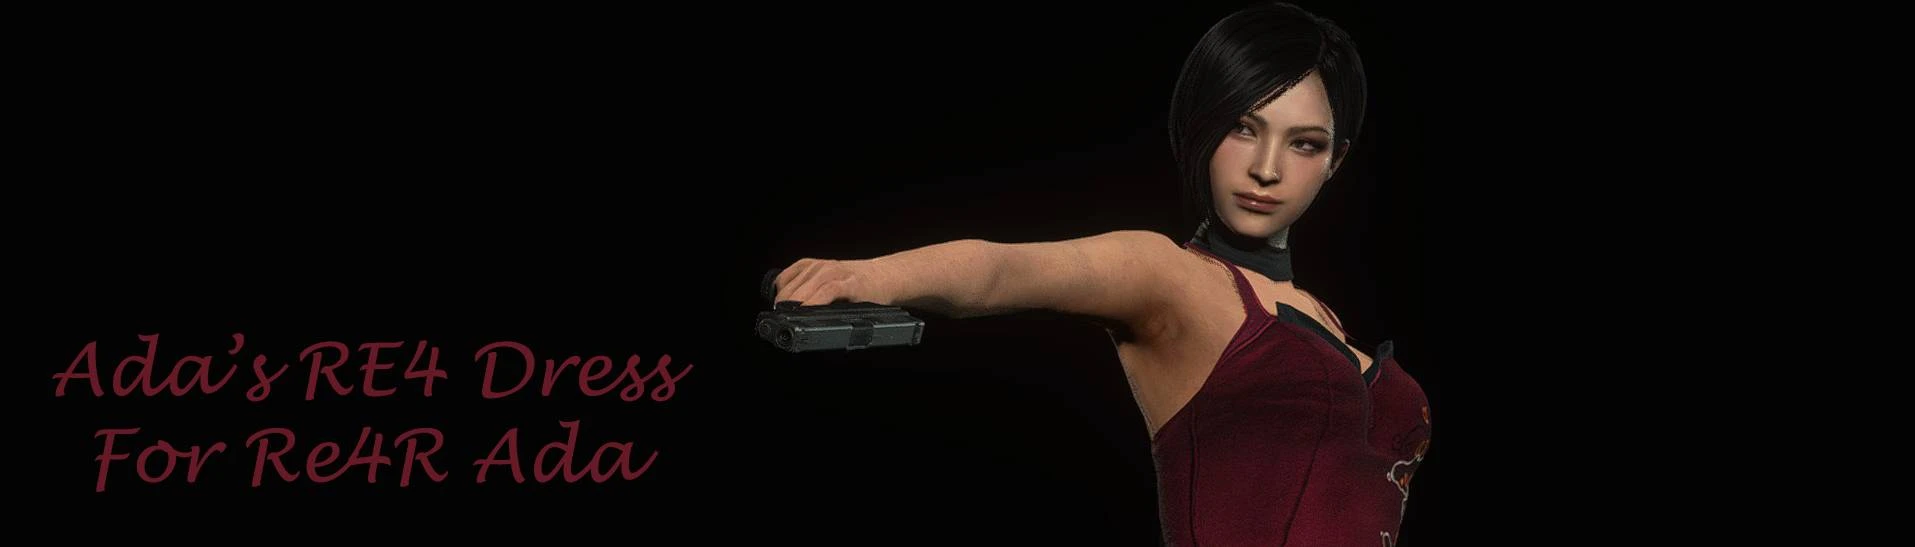 Ada Wong - Resident Evil 6 at Resident Evil 3 (2020) Nexus - Mods